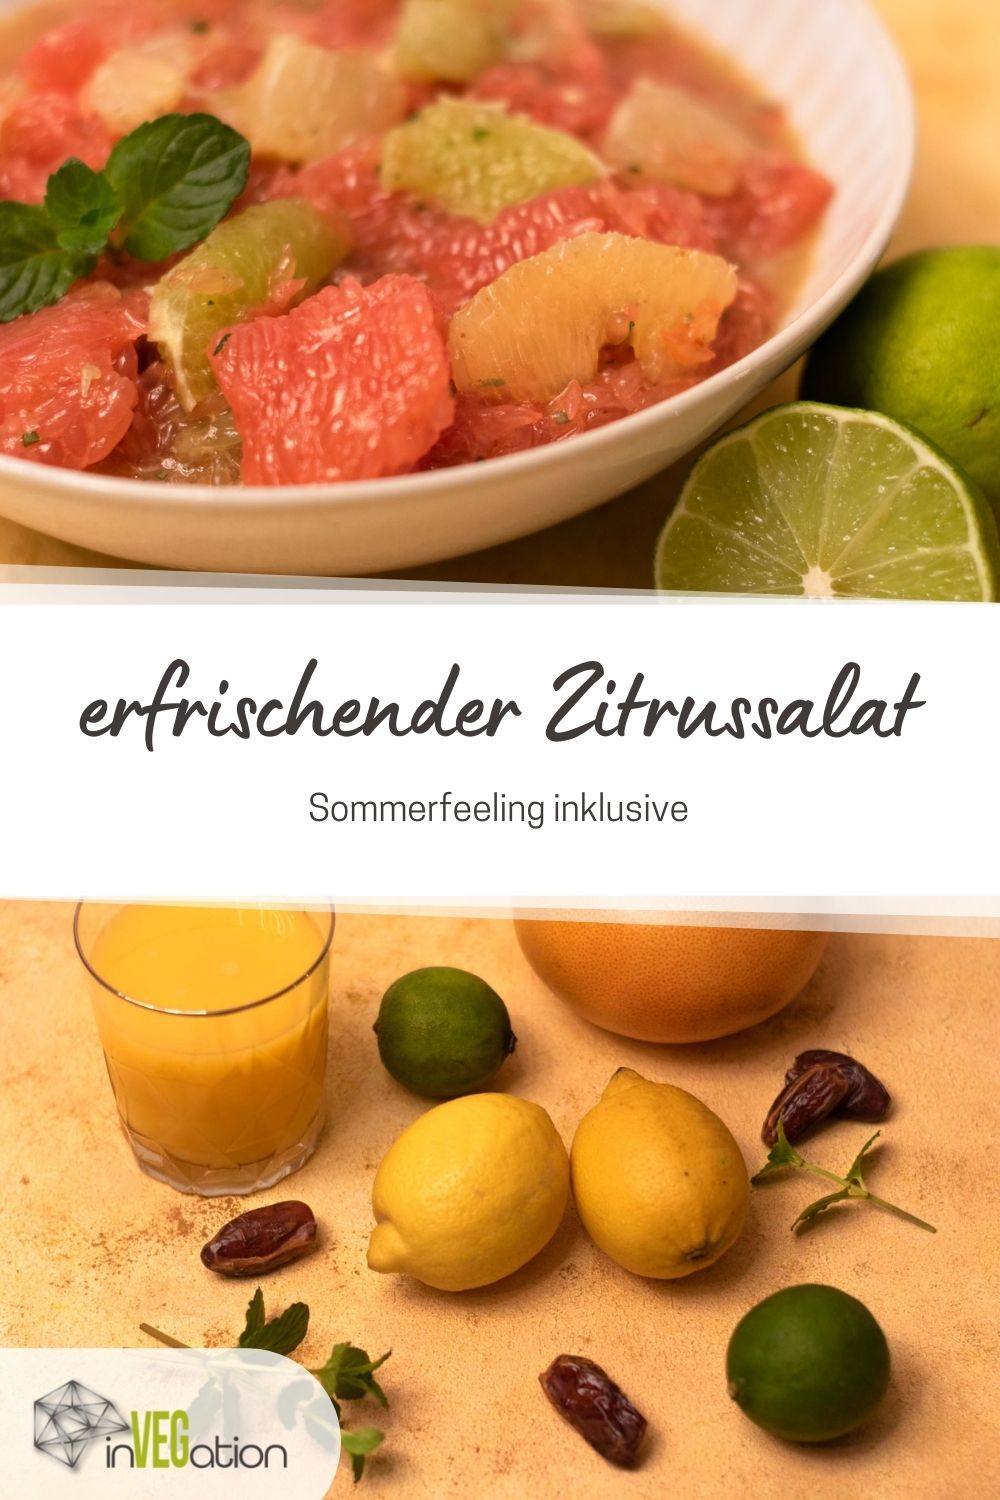 Erfrischender Zitrussalat mit Dattel-Dressing | invegation.de